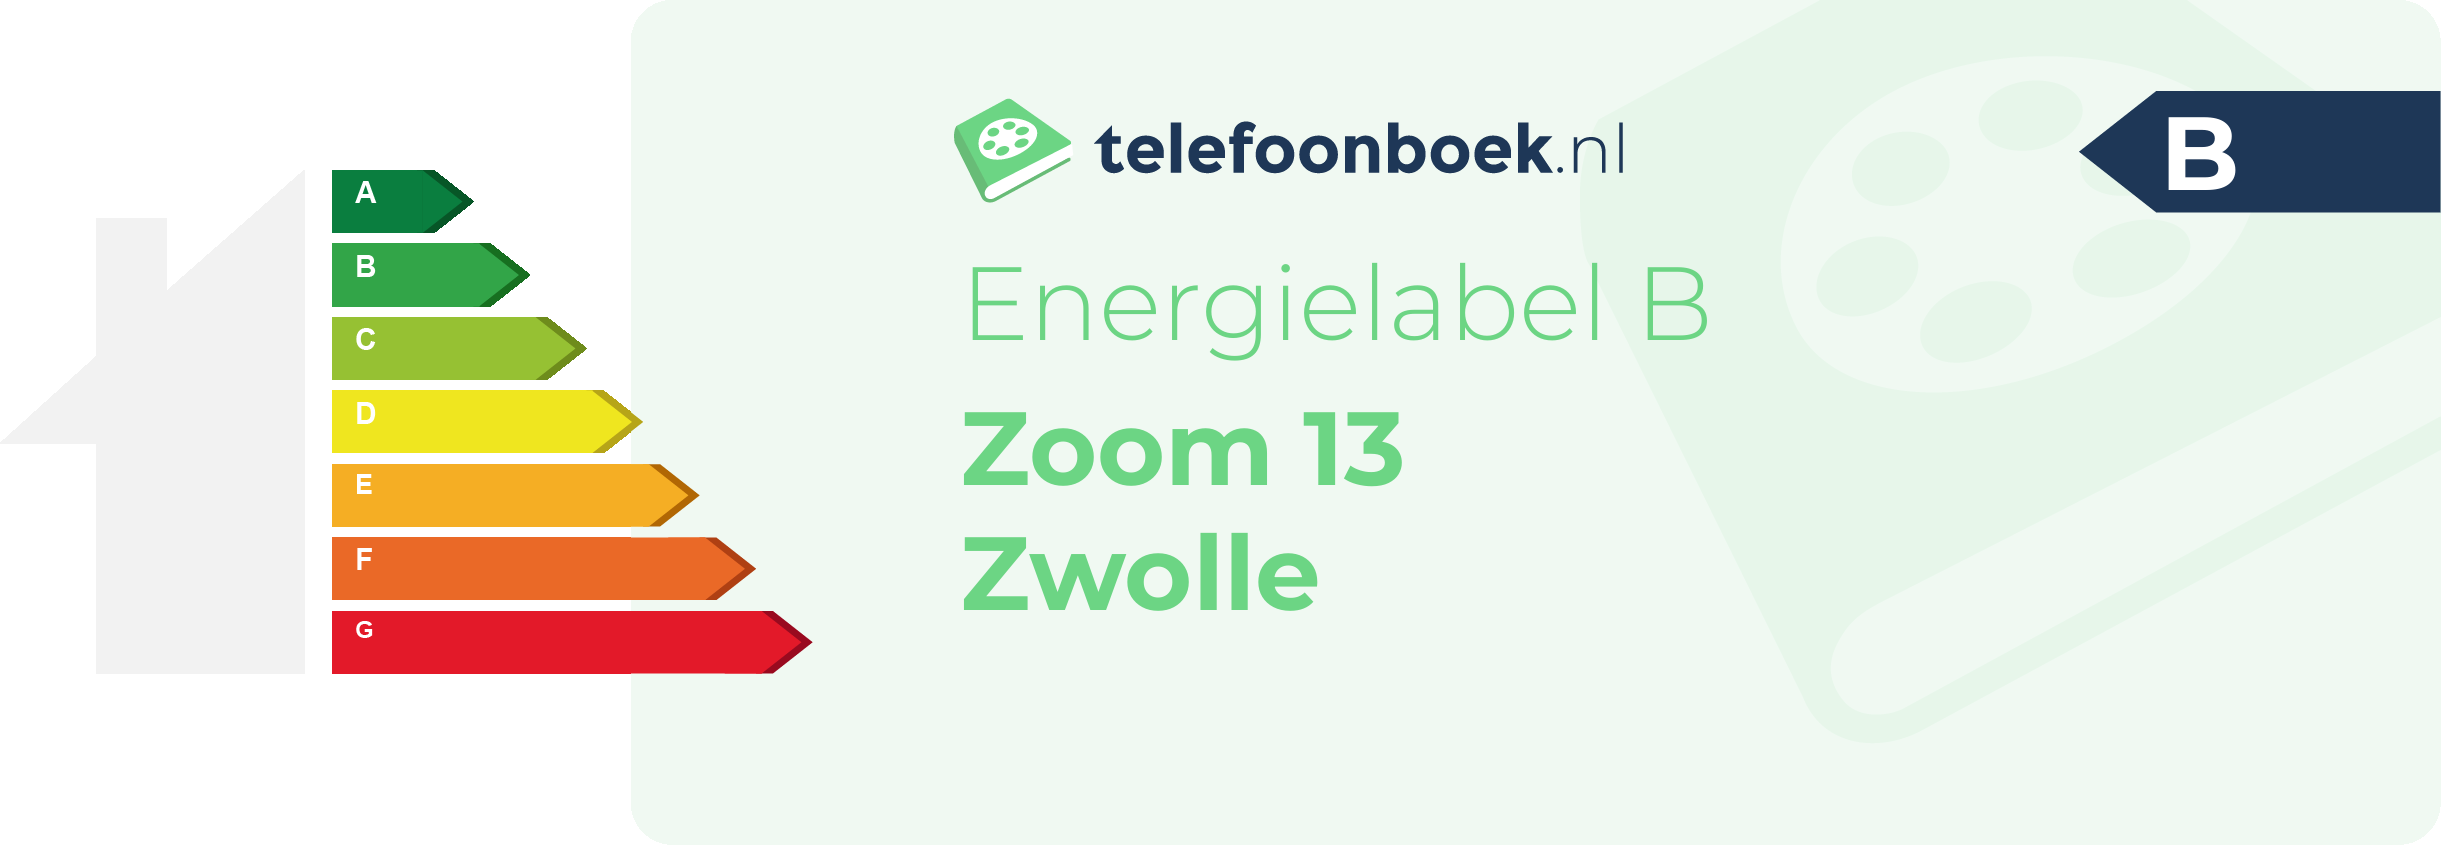 Energielabel Zoom 13 Zwolle